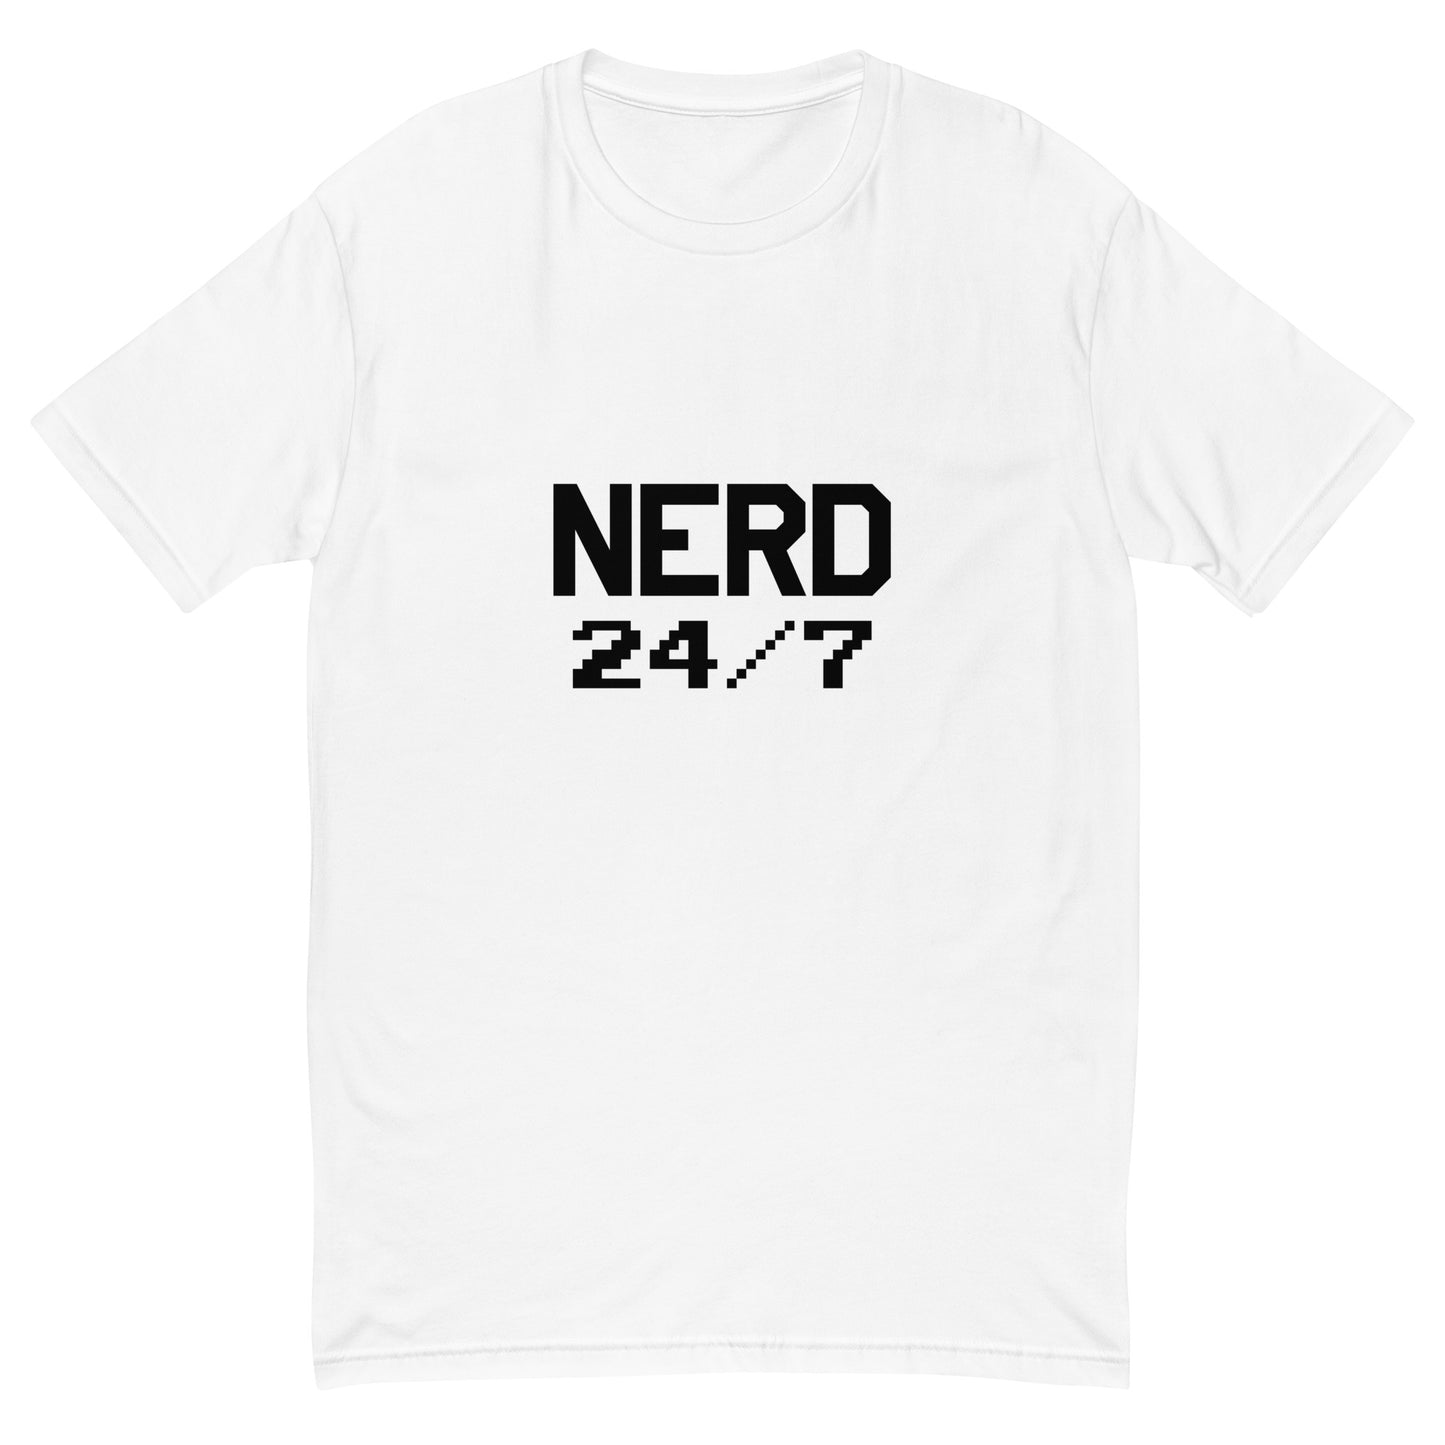 Nerd 24/7 Shirt (Black Text)